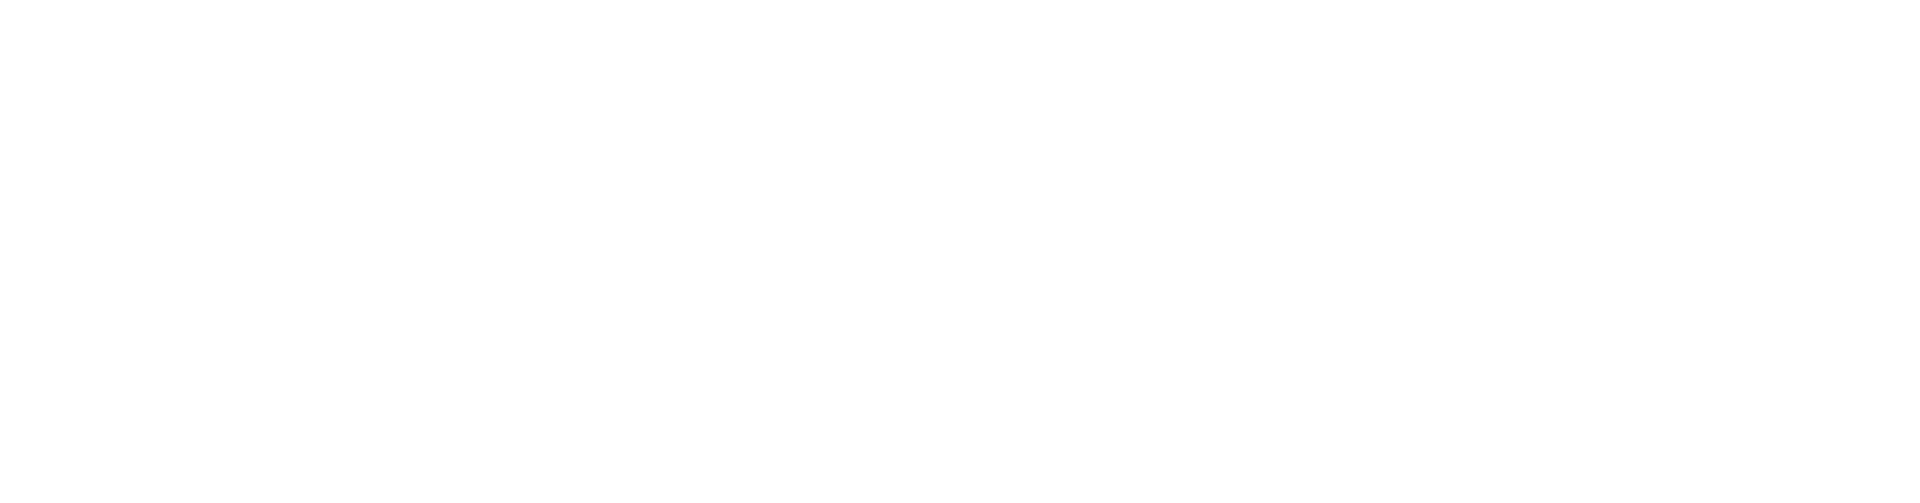 NO McClintock Quarry